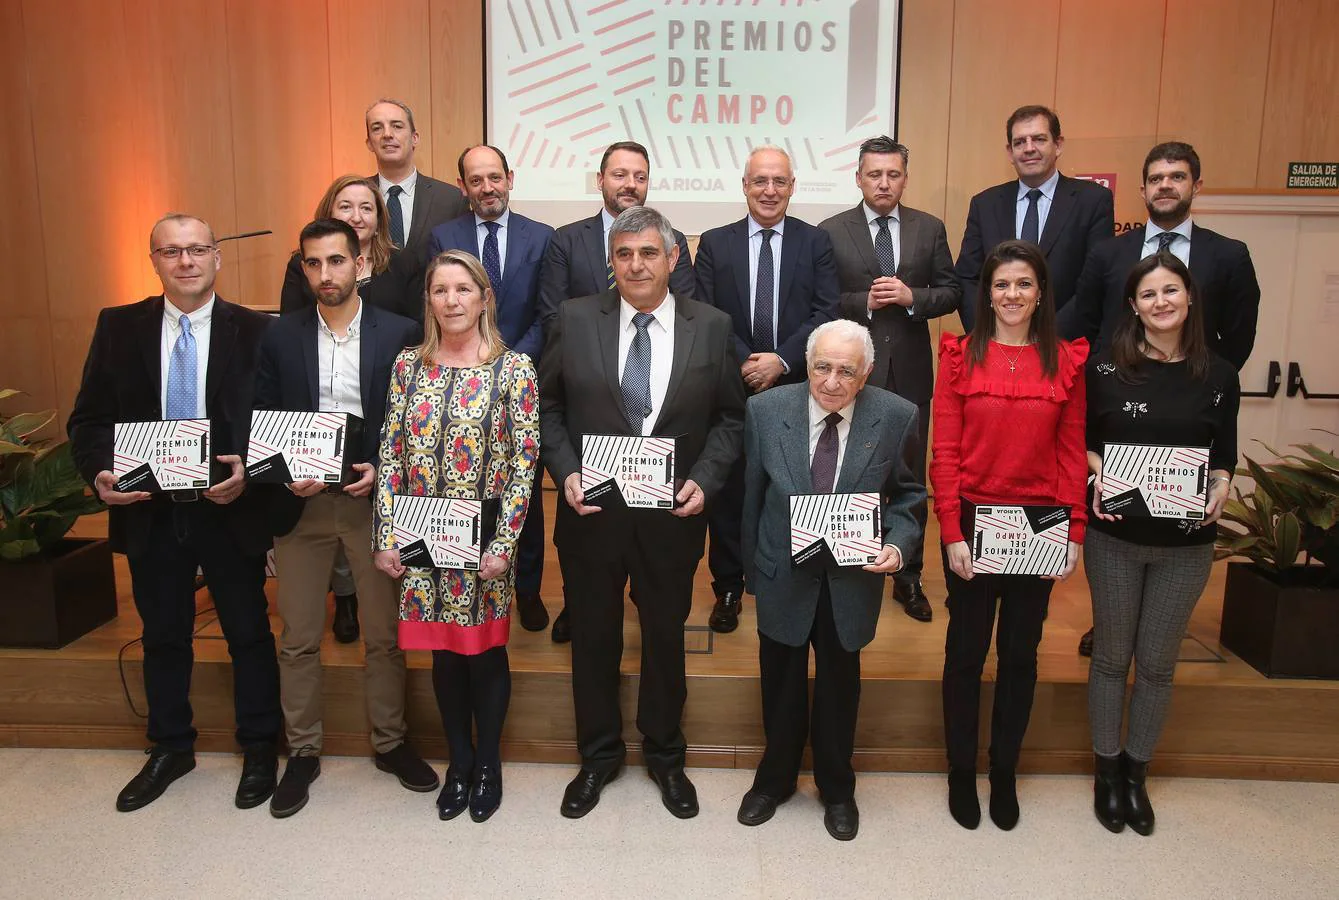 Diario LA RIOJA y Bankia organizan estos galardones